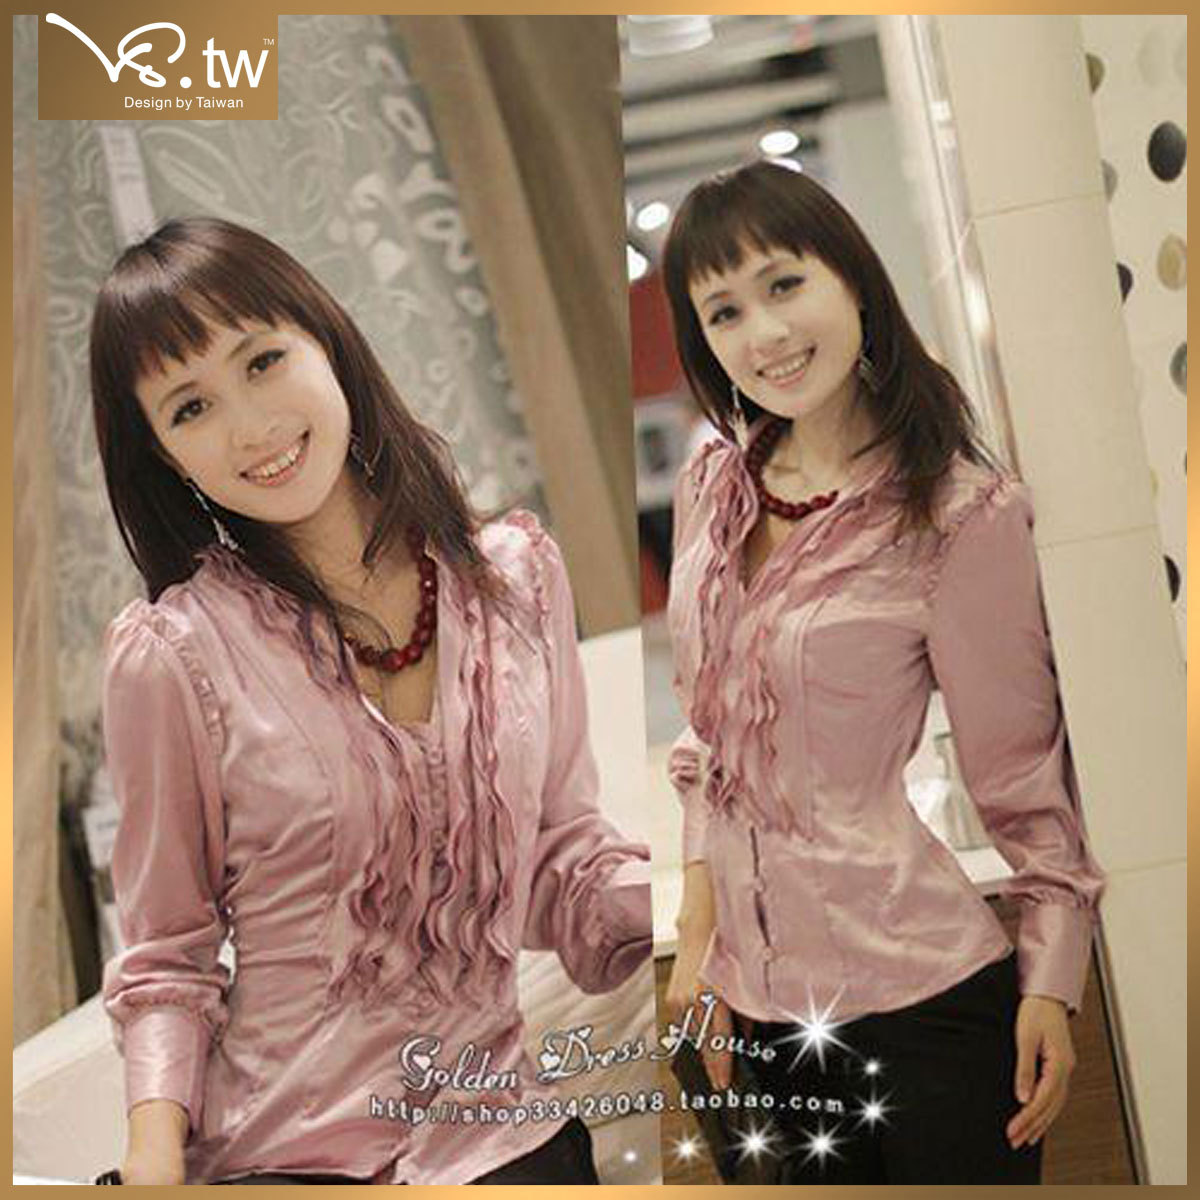 2011新款秋装台湾品牌VS.tw散发优雅贵气 高雅层叠荷叶边衬衫3656